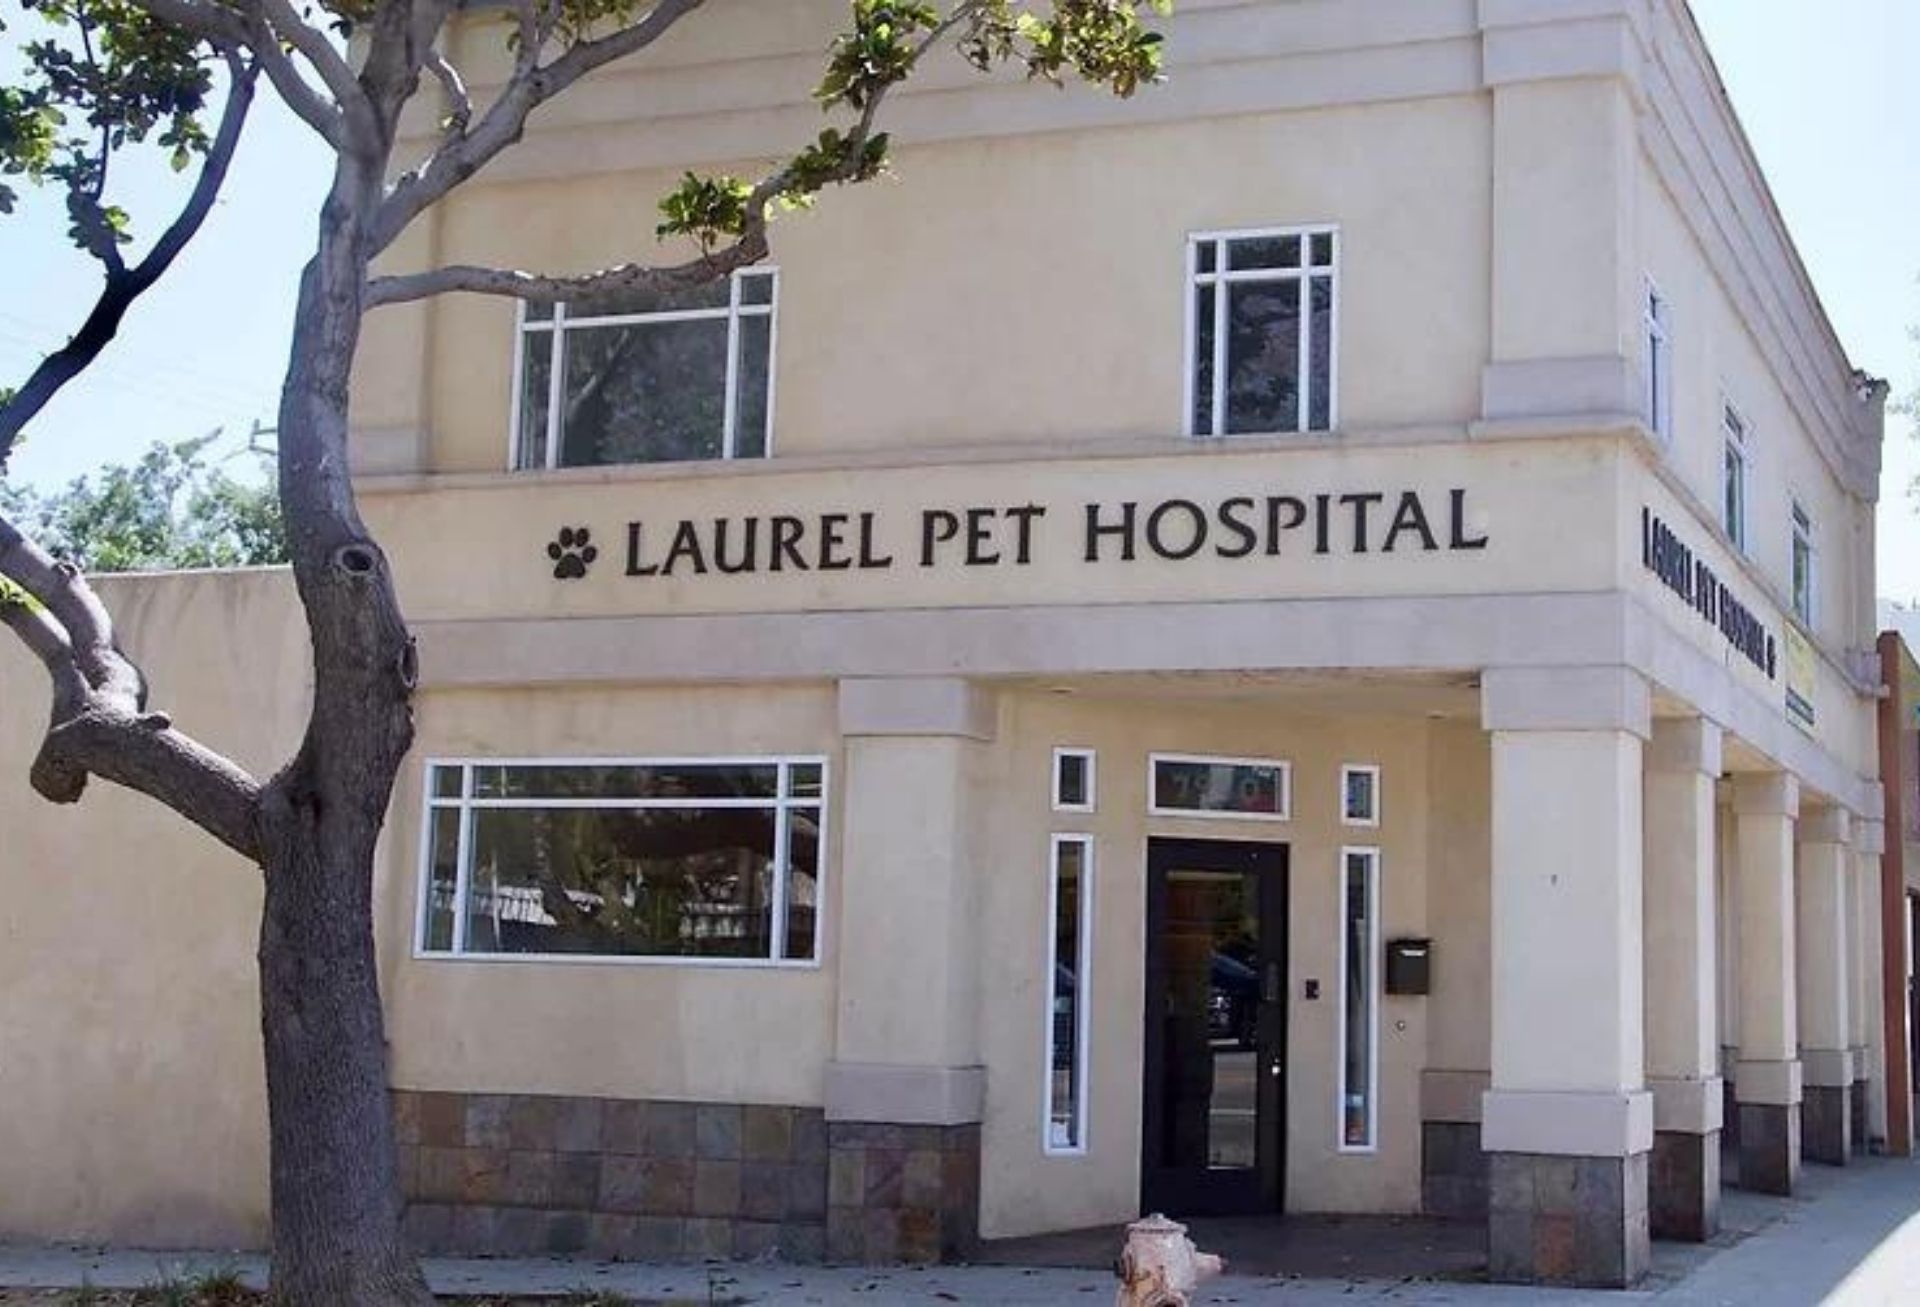 Laurel Pet Hospital - historic building